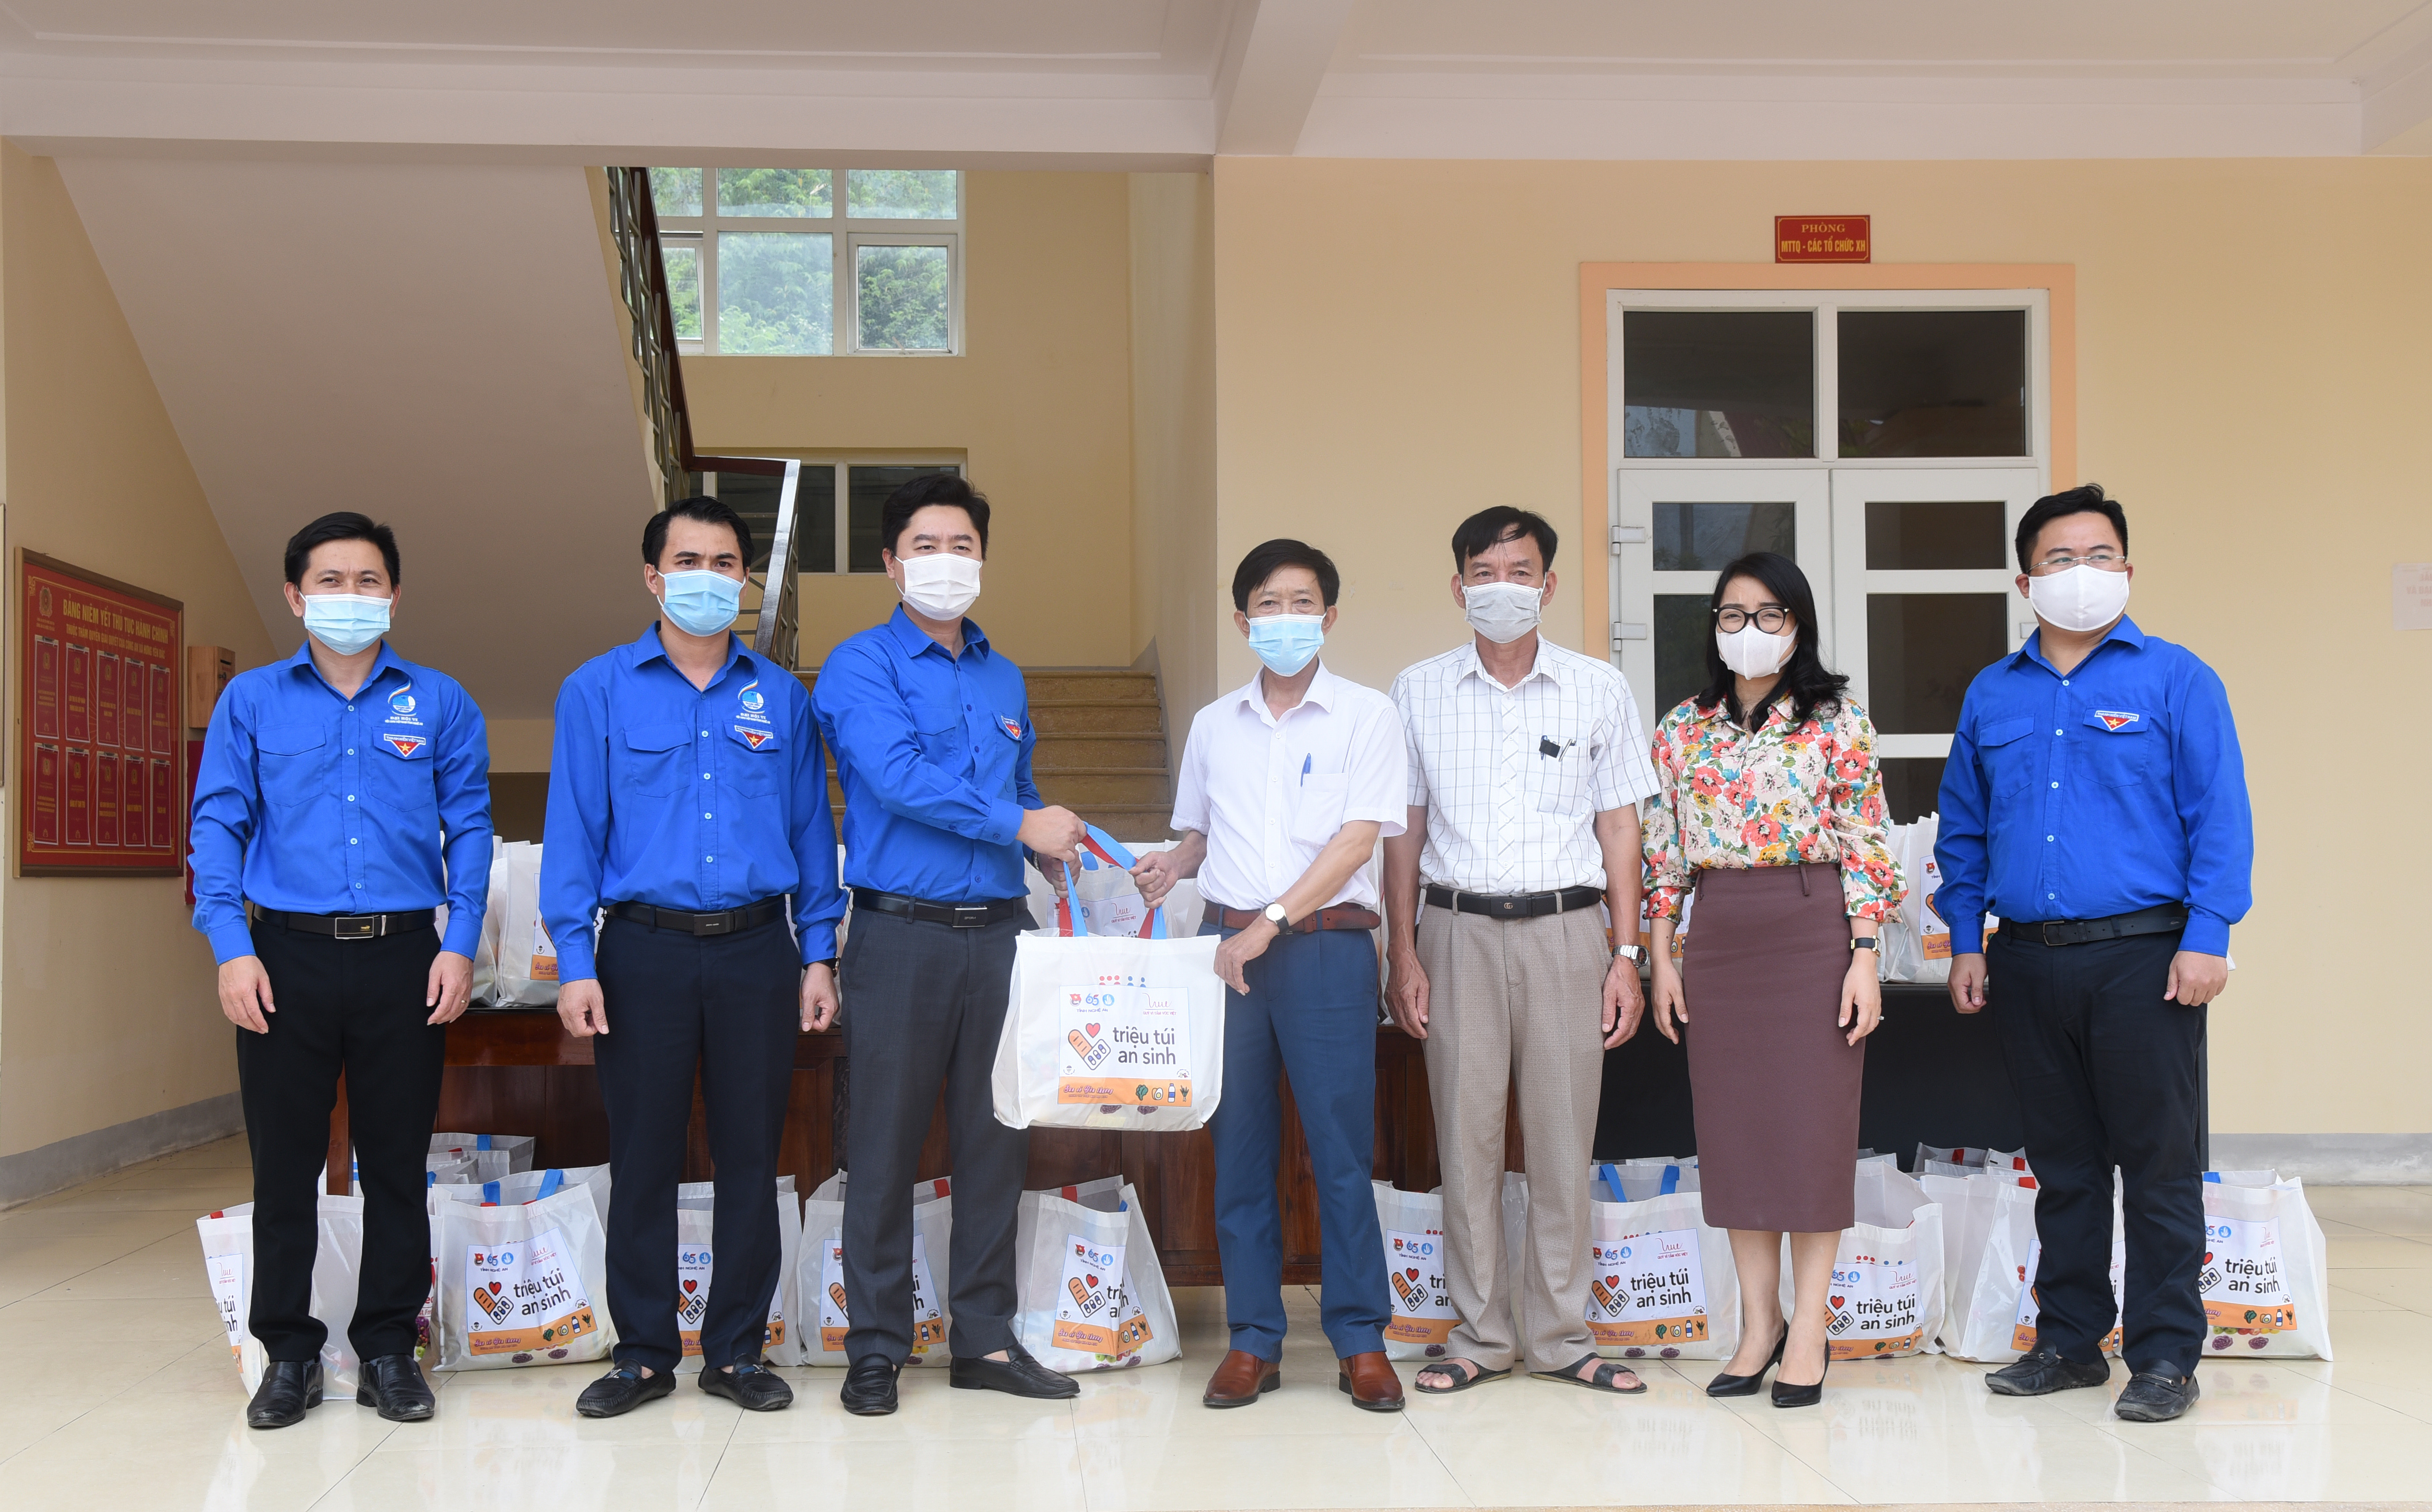 50 túi an sinh được Tỉnh đoàn thông qua UBND xã Hưng Yên Bắc, huyện Hưng Nguyên để chuyển đến các địa chỉ cần trên địa bàn. Ảnh: TG